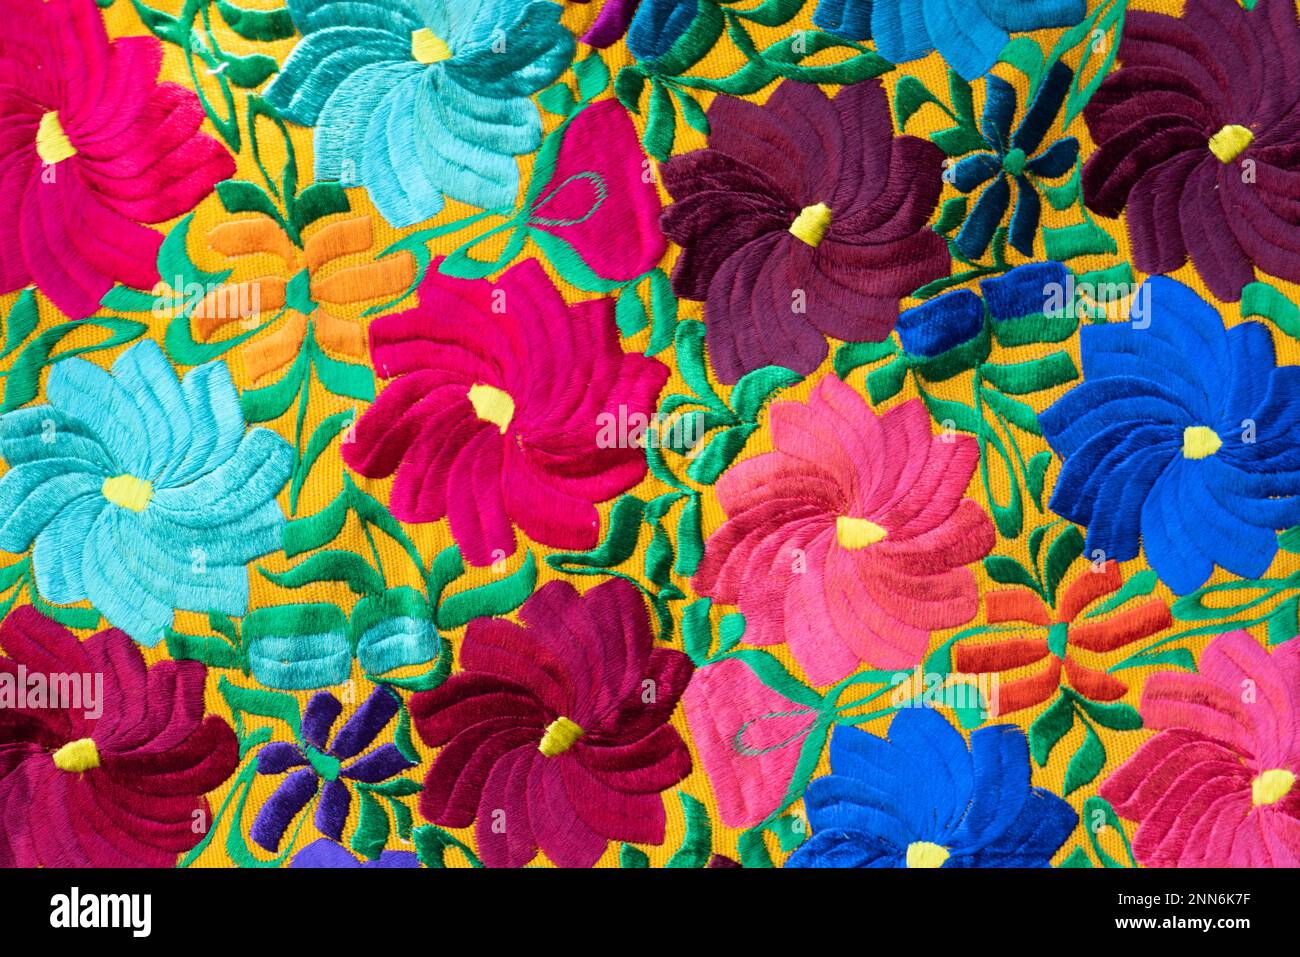 Décoration florale ornée de perles à la main au Chiapas, fleurs colorées cousues avec soin et passion artisanat mexicain Banque D'Images